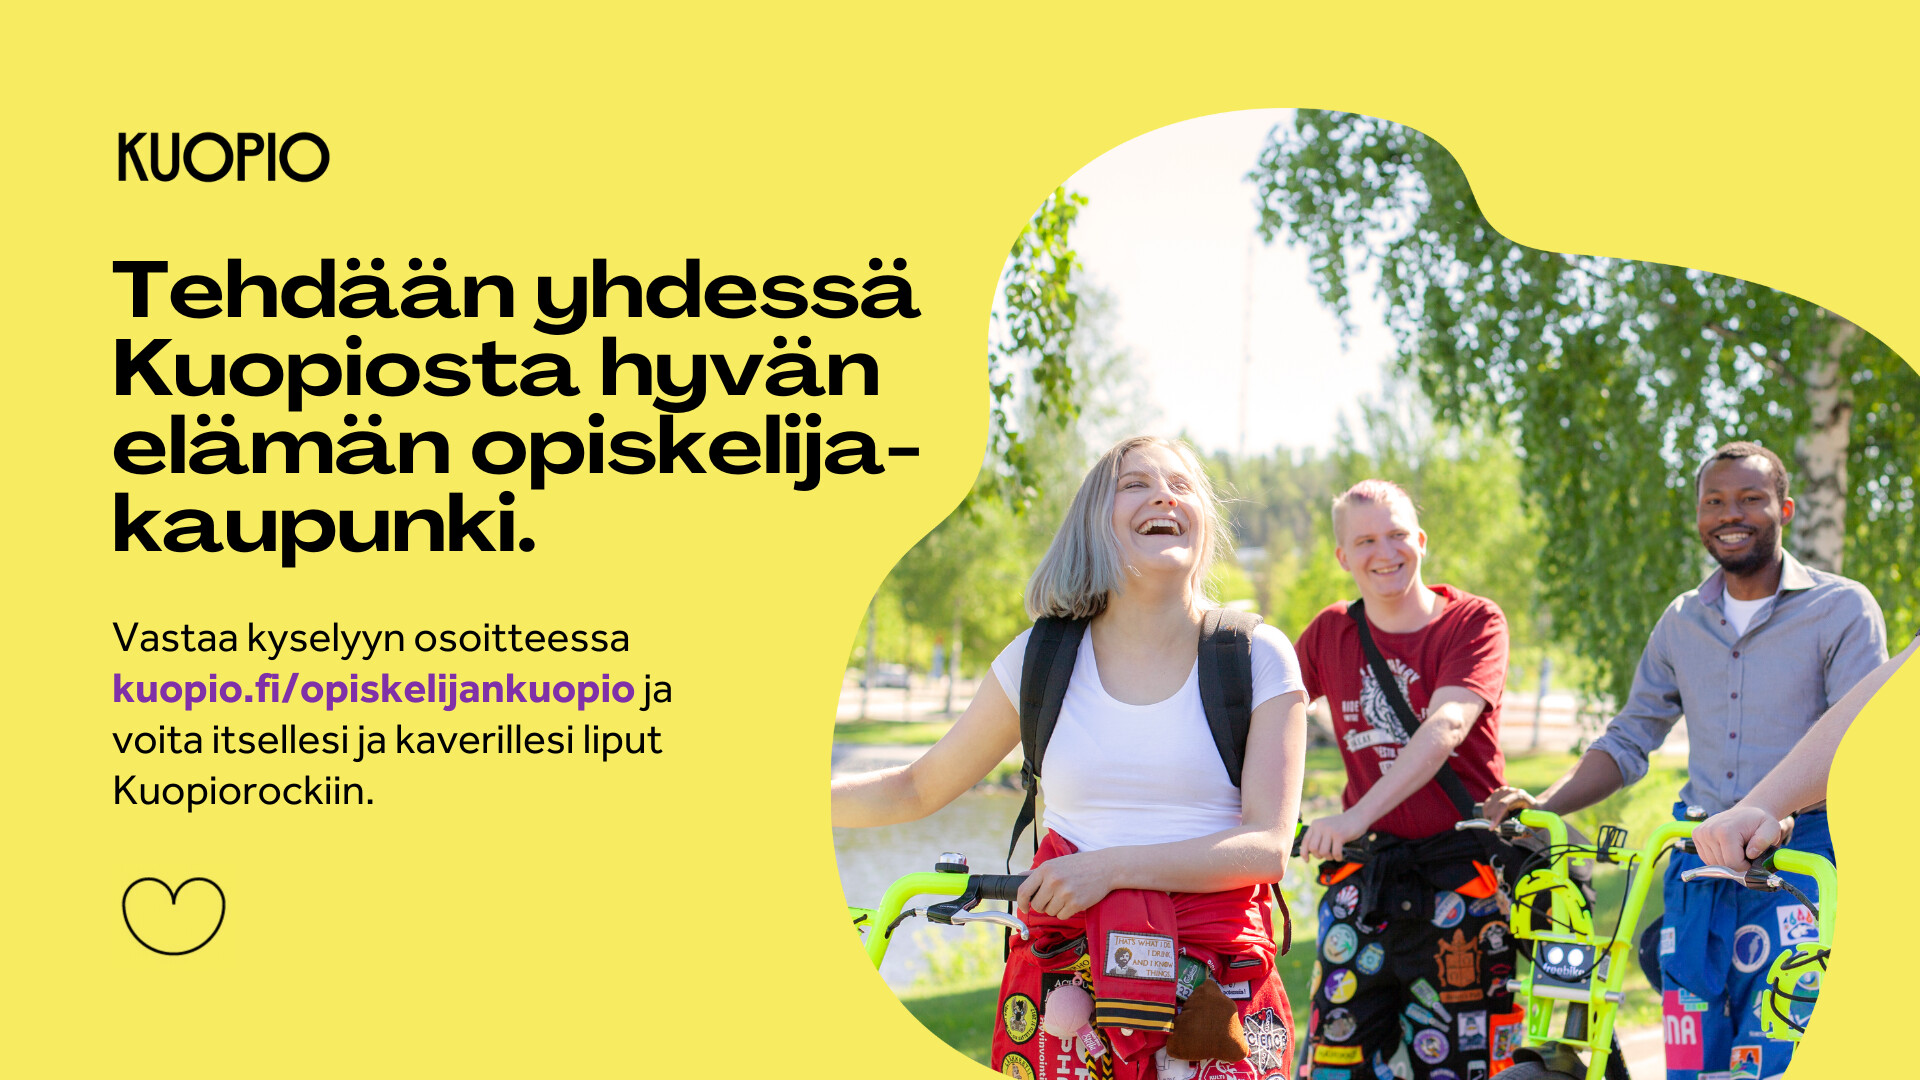 Miten parantaisit Kuopiota opiskelijakaupunkina? Vastaa kyselyyn ja voita liput Kuopiorockiin kahdelle!